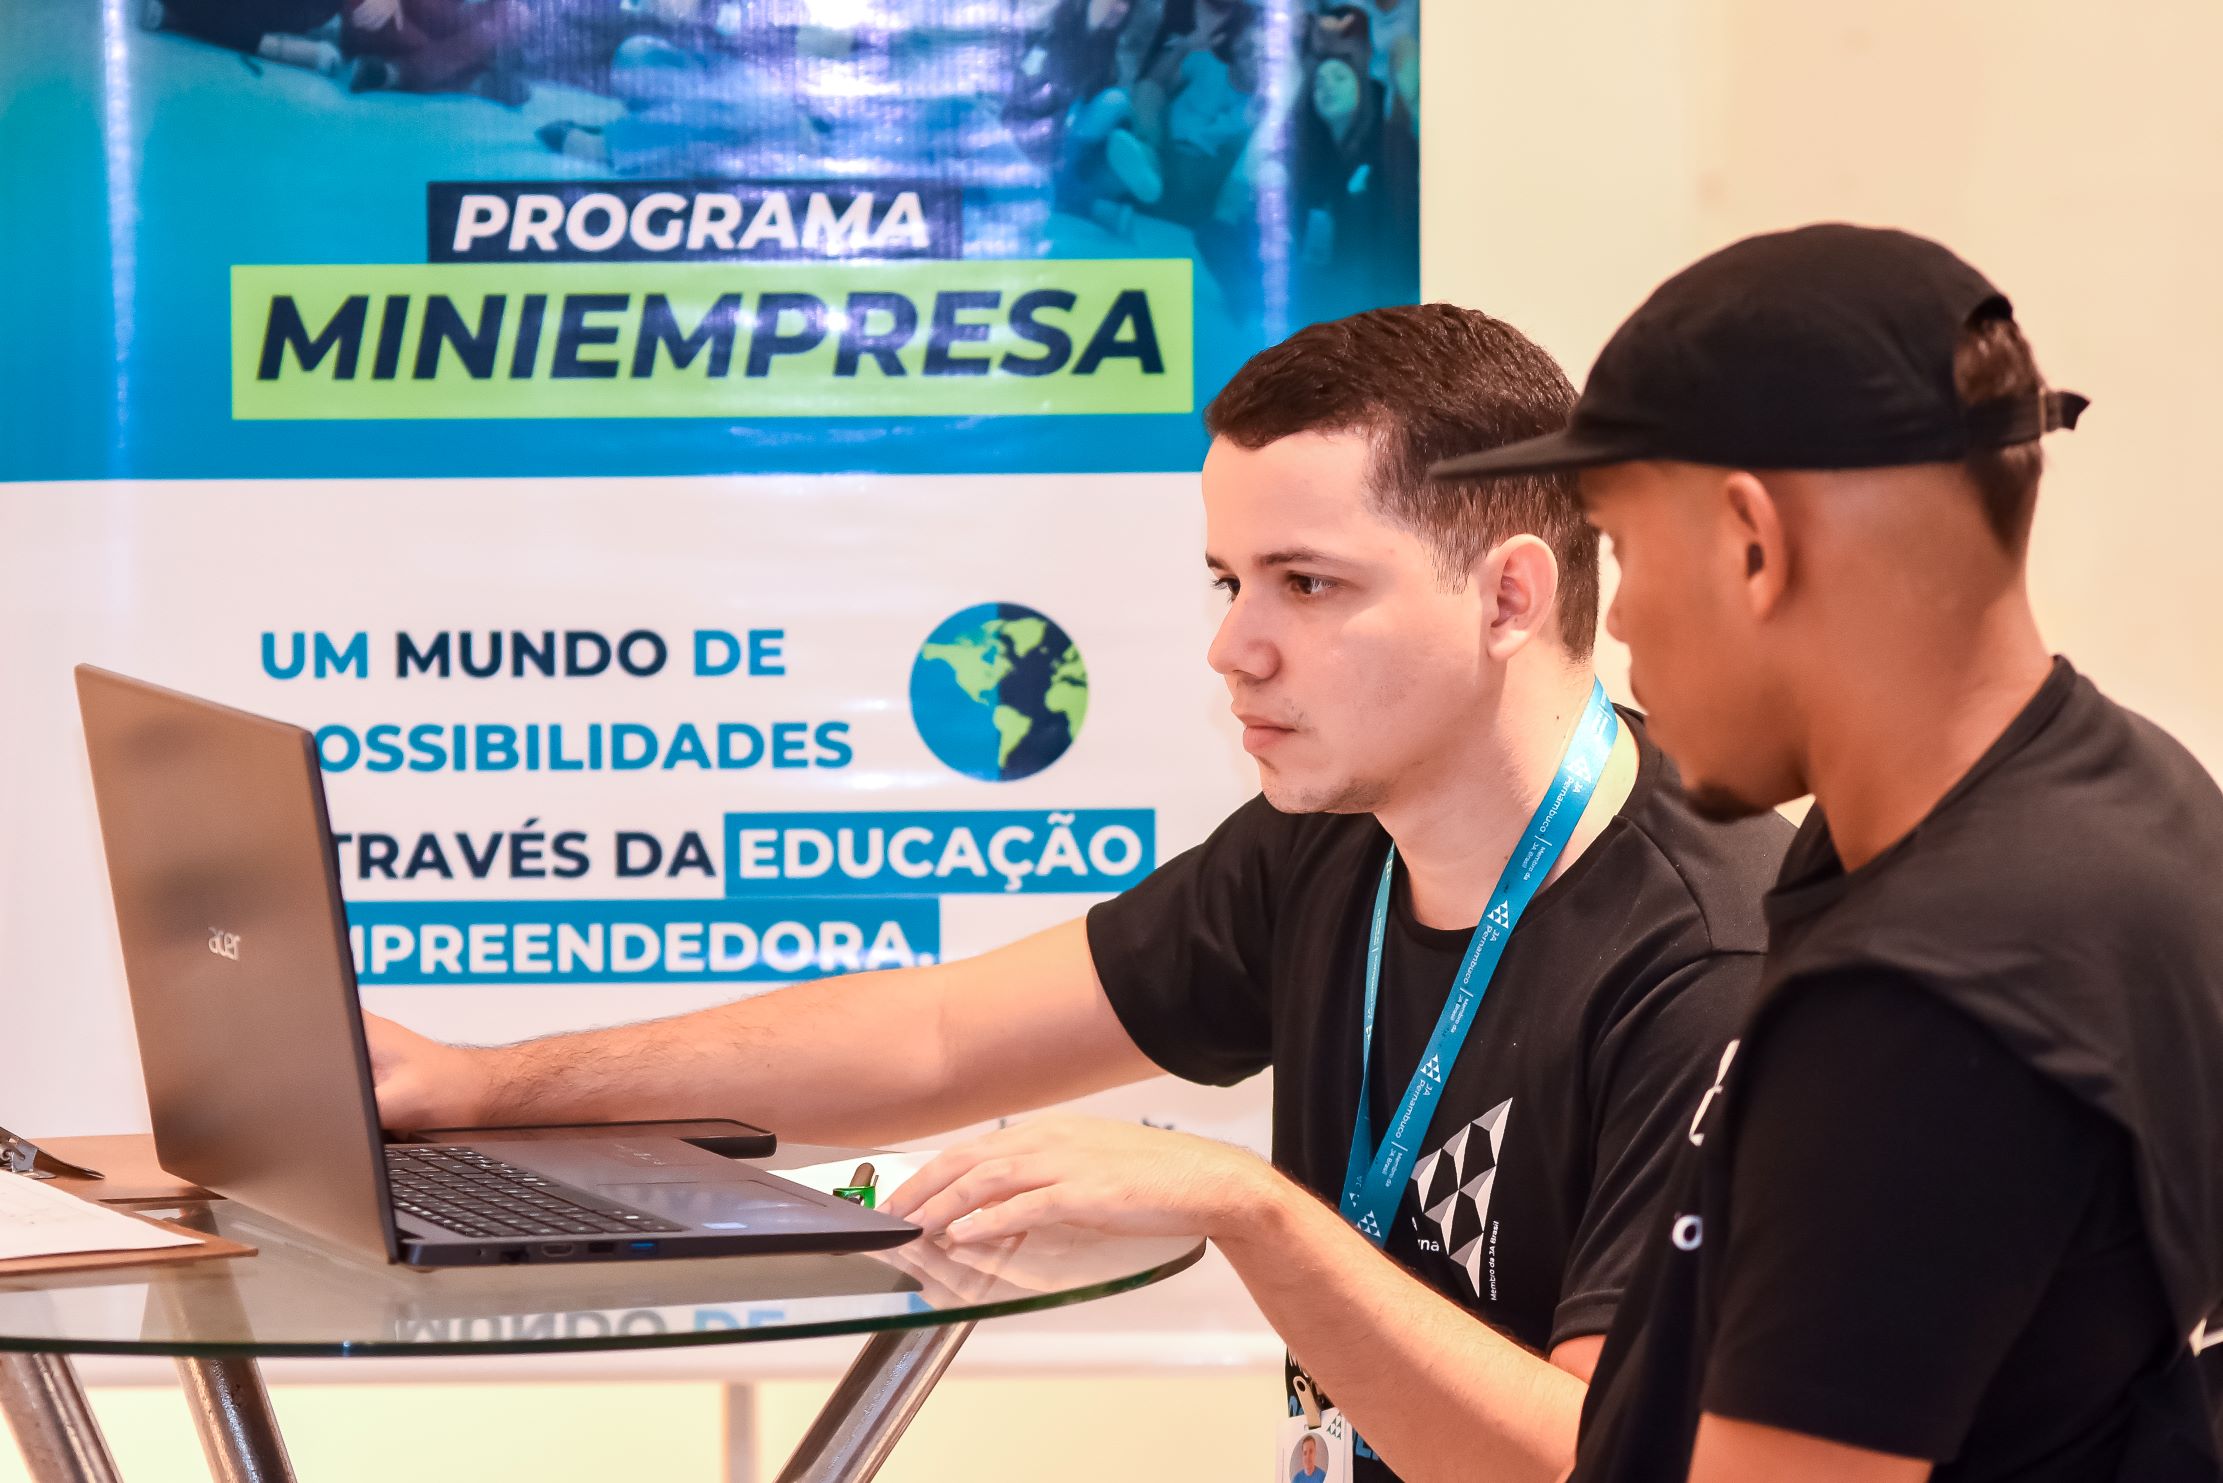 Programa Miniempresa, da Junior Achievement Pernambuco, abre inscrições para voluntários